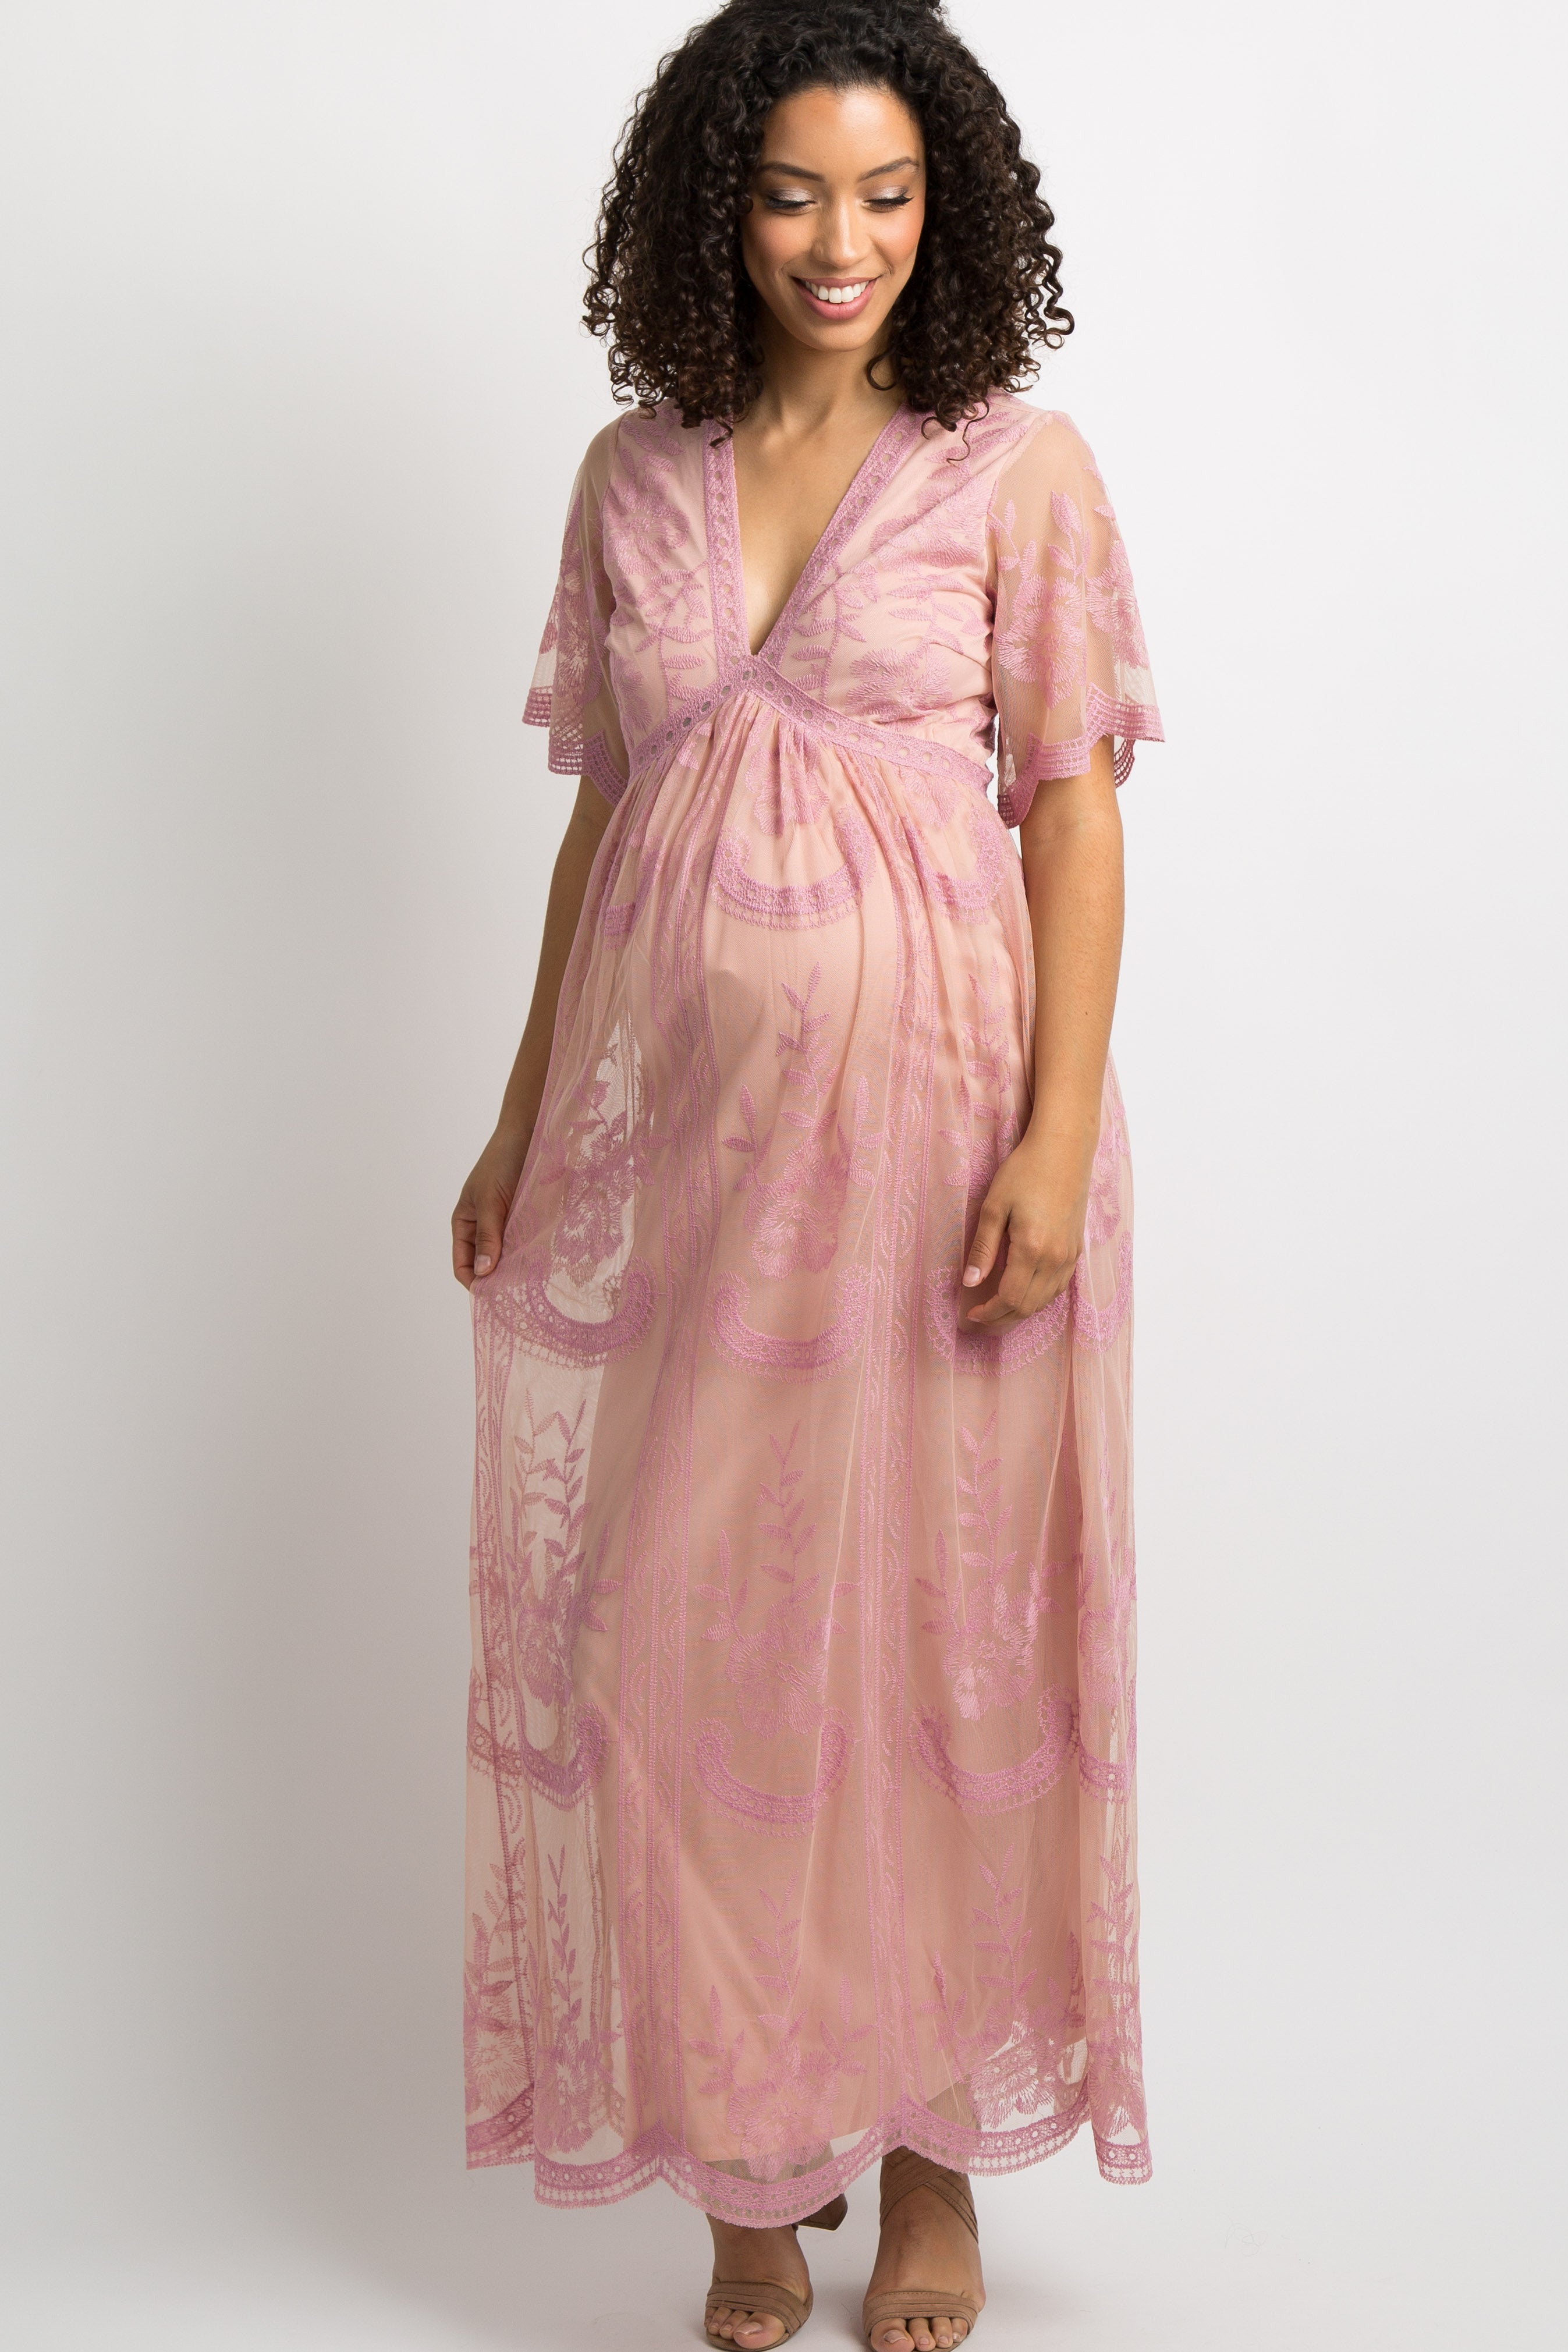 pinkblush maternity dress